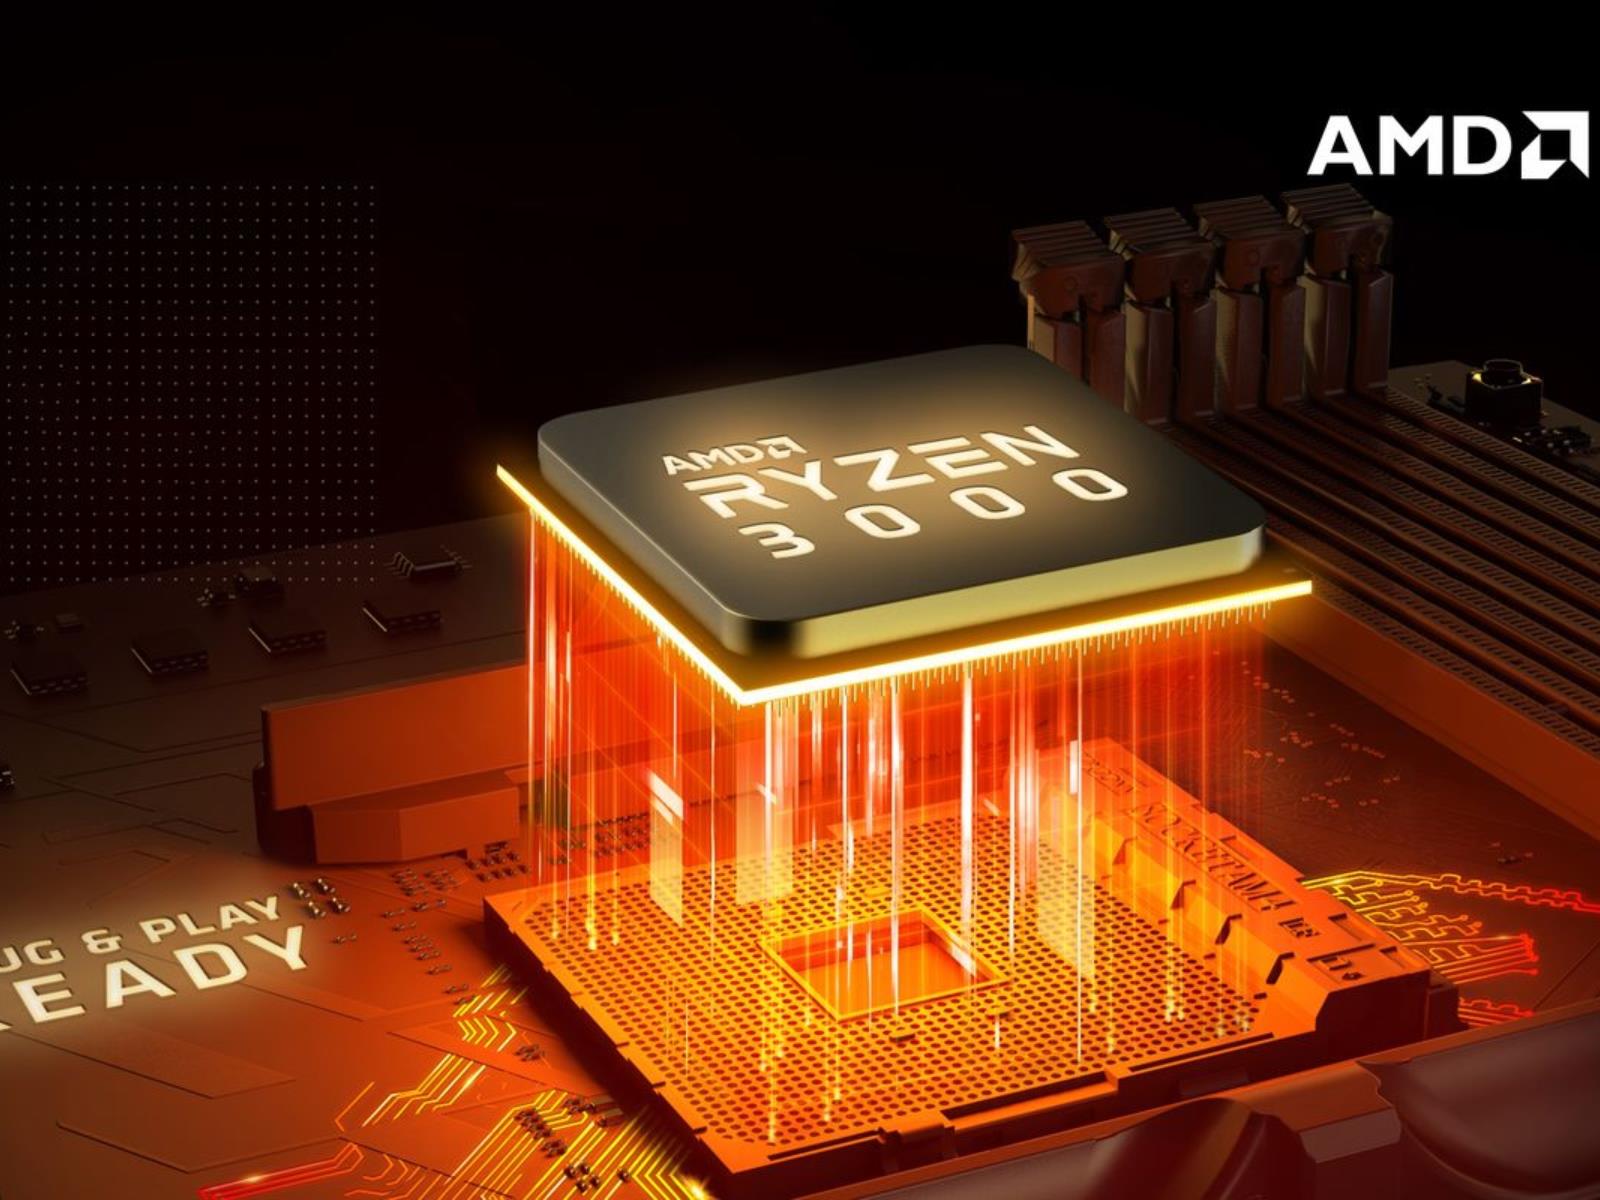 Third parties confirm AMD's outstanding Ryzen 3000 numbers